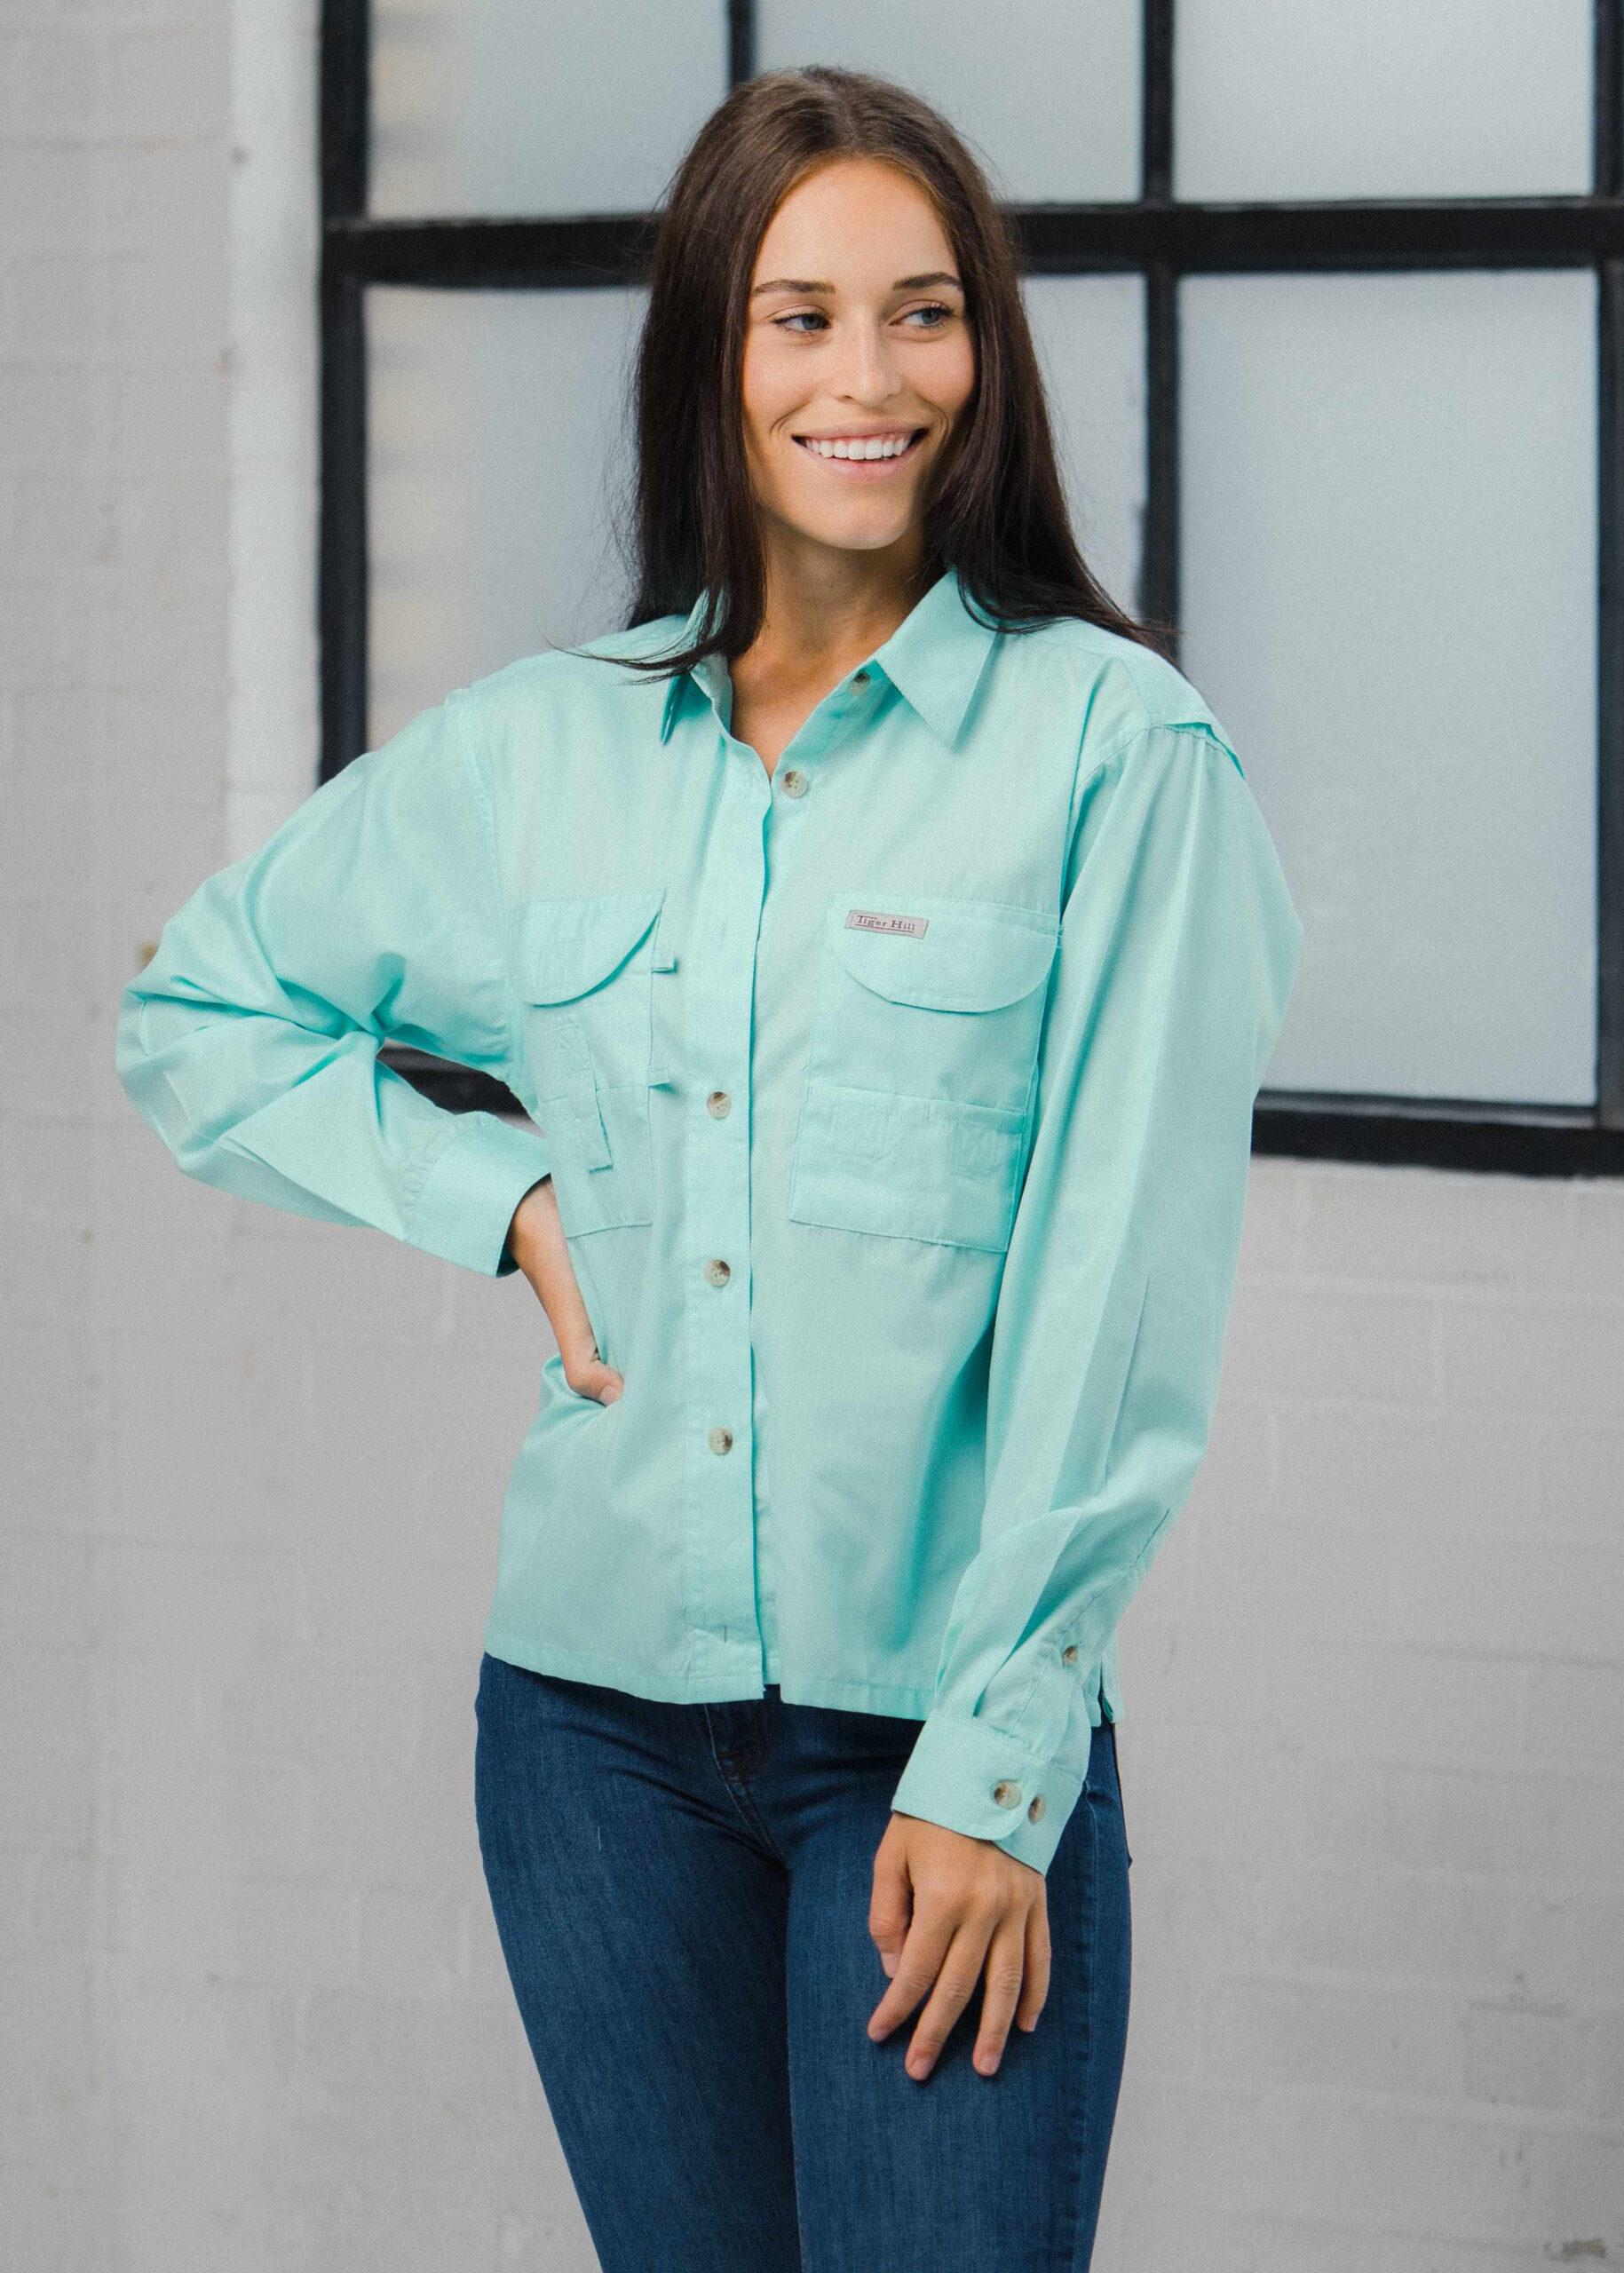 Fishing Shirts - Women's - Short Sleeve Fishing Shirt - FH Outfitters